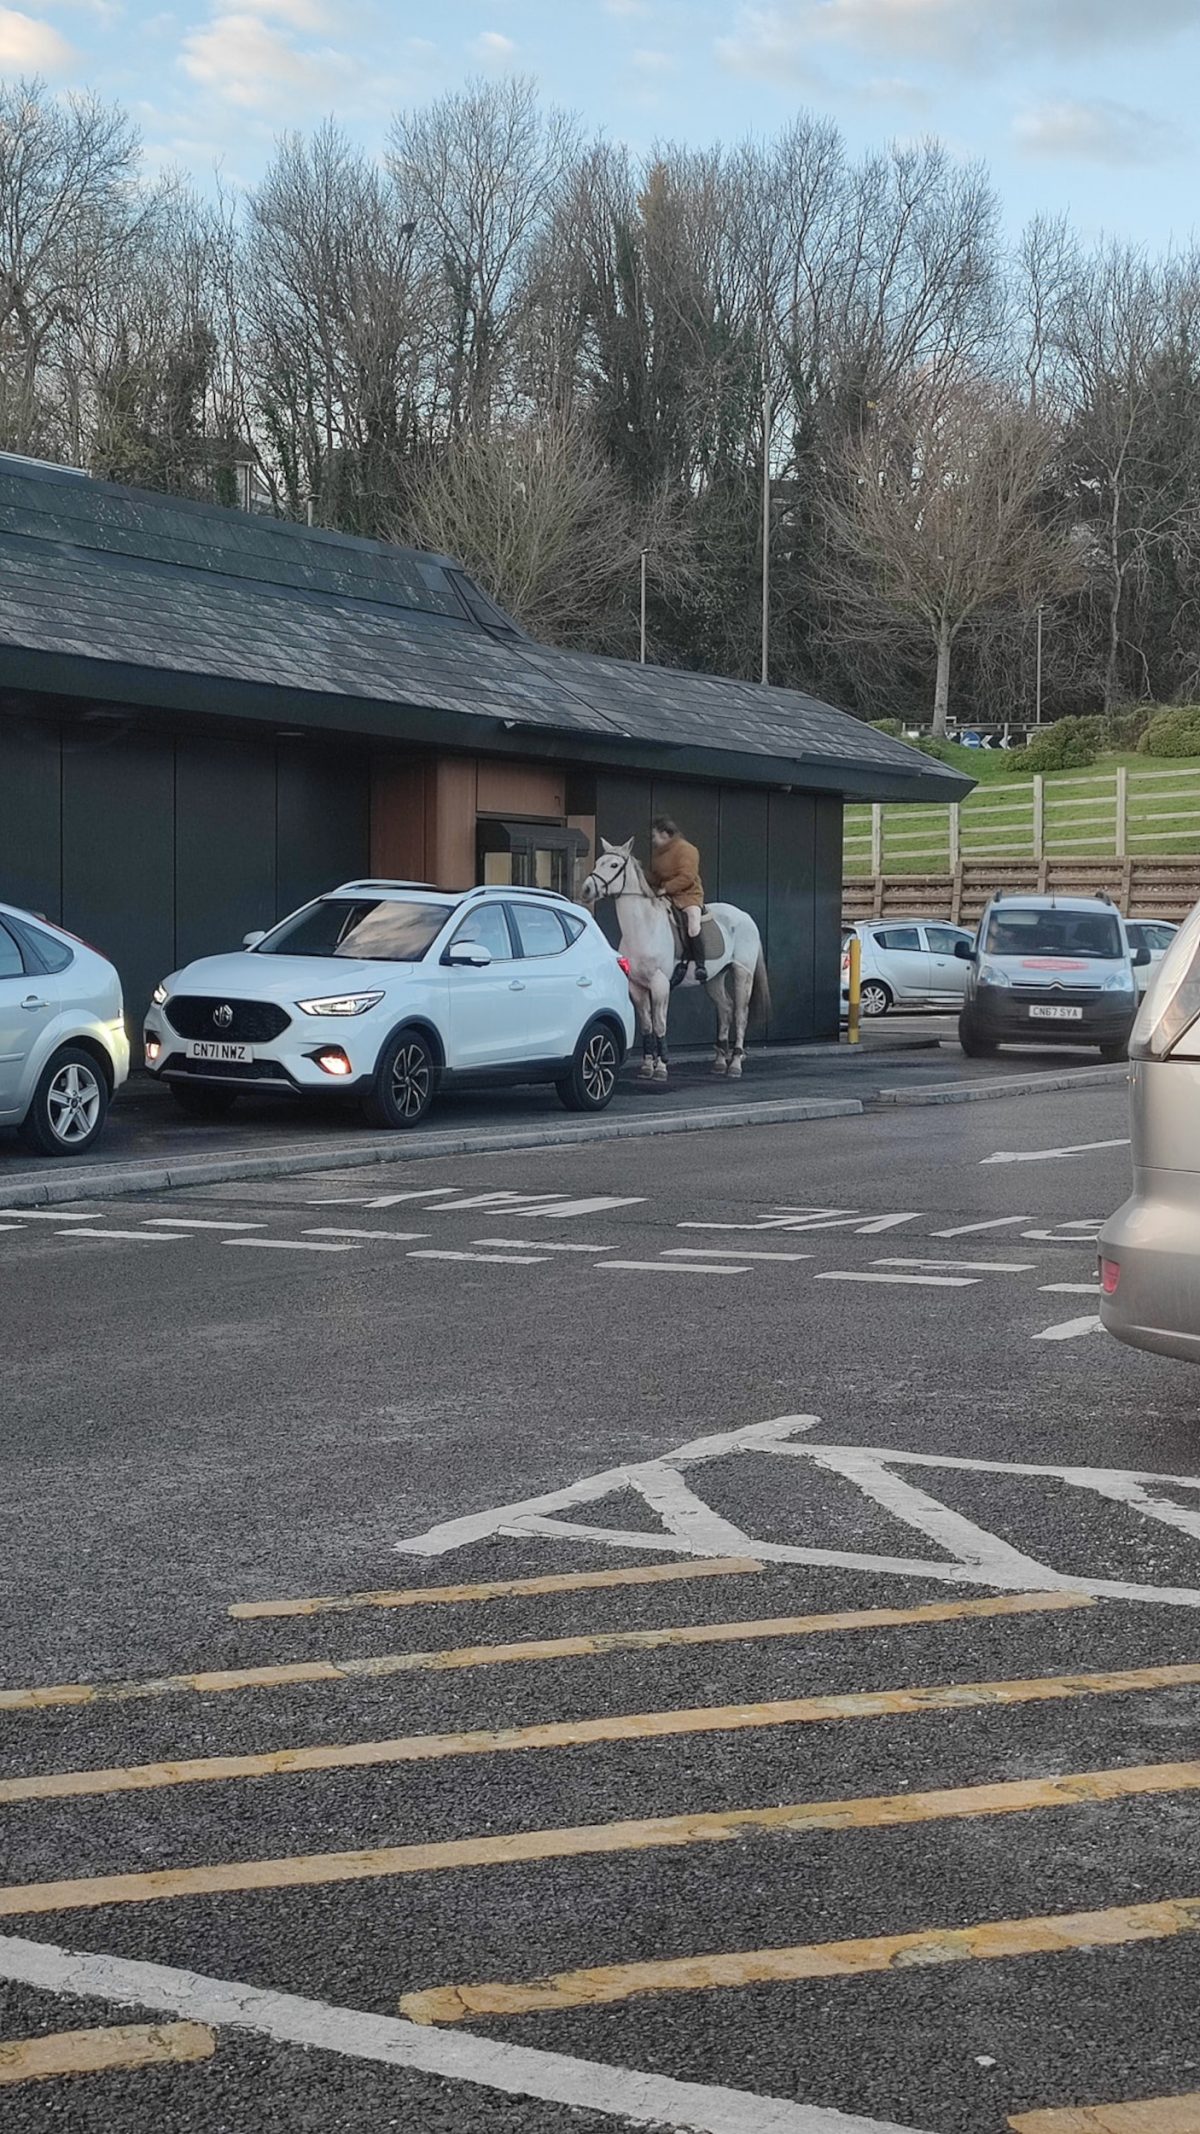 Horse and rider paying at McDonald's drive-thru.